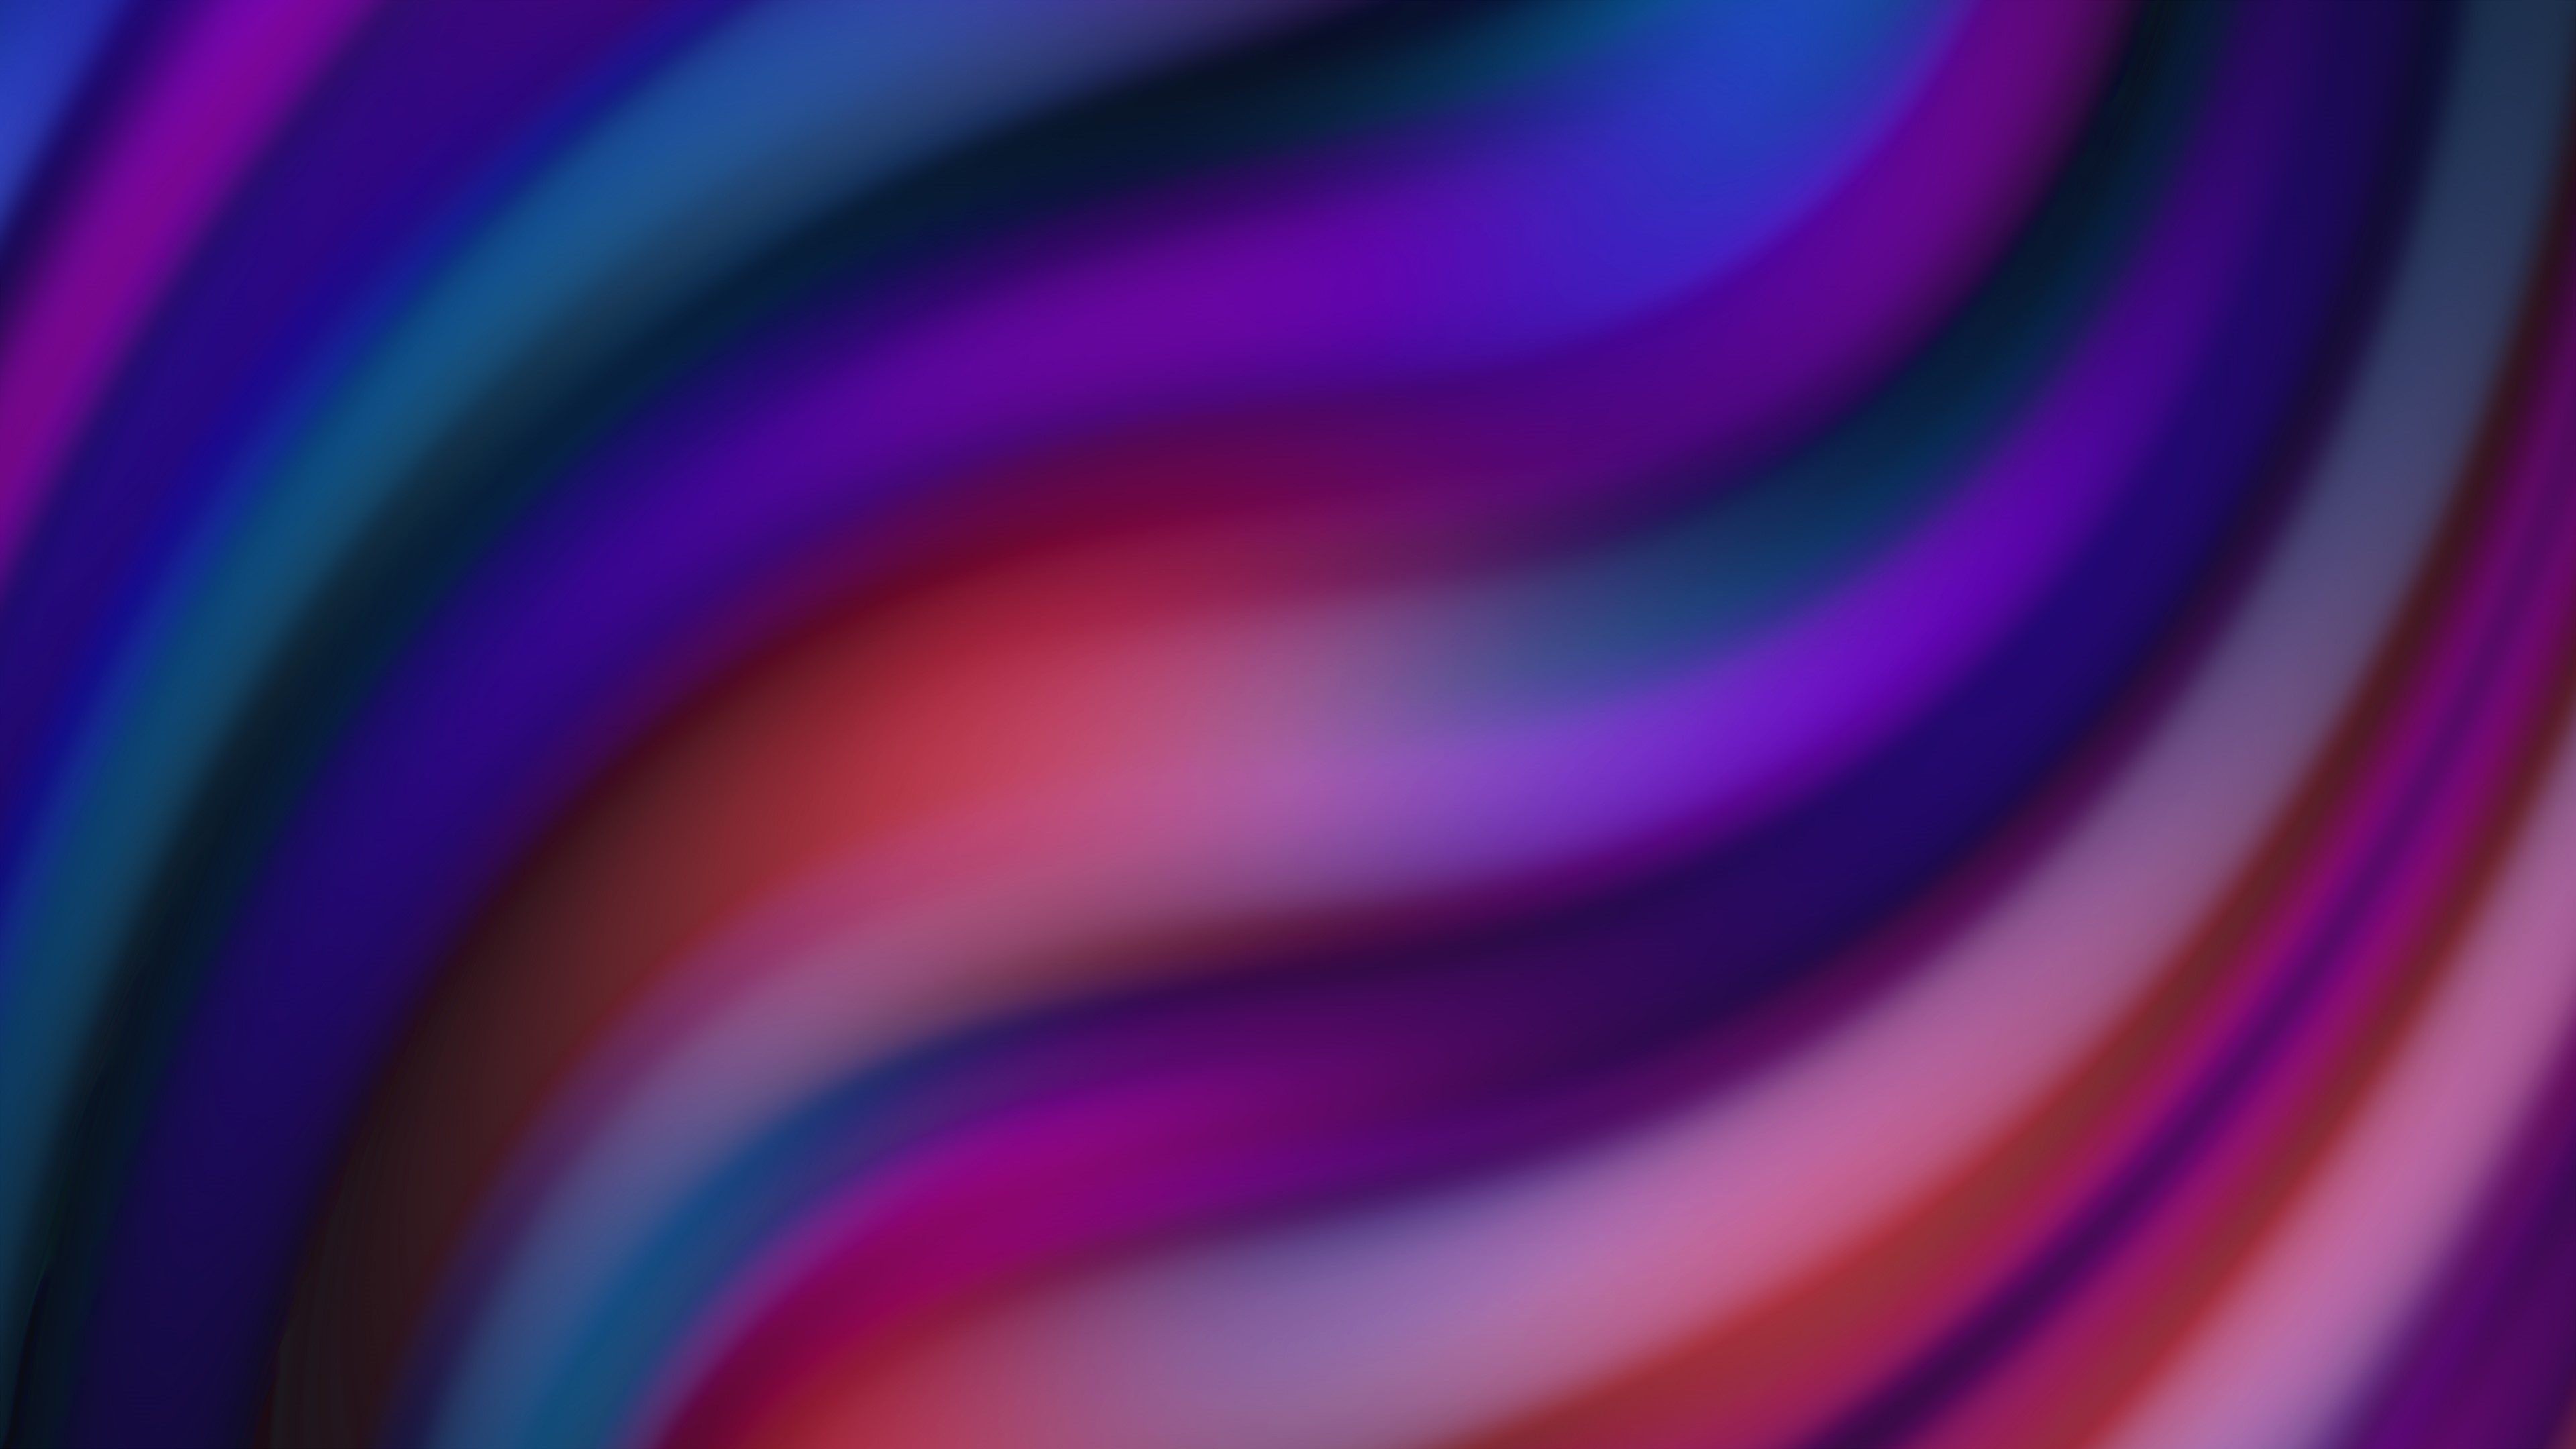 K plexus colorful blue neon purple red lines